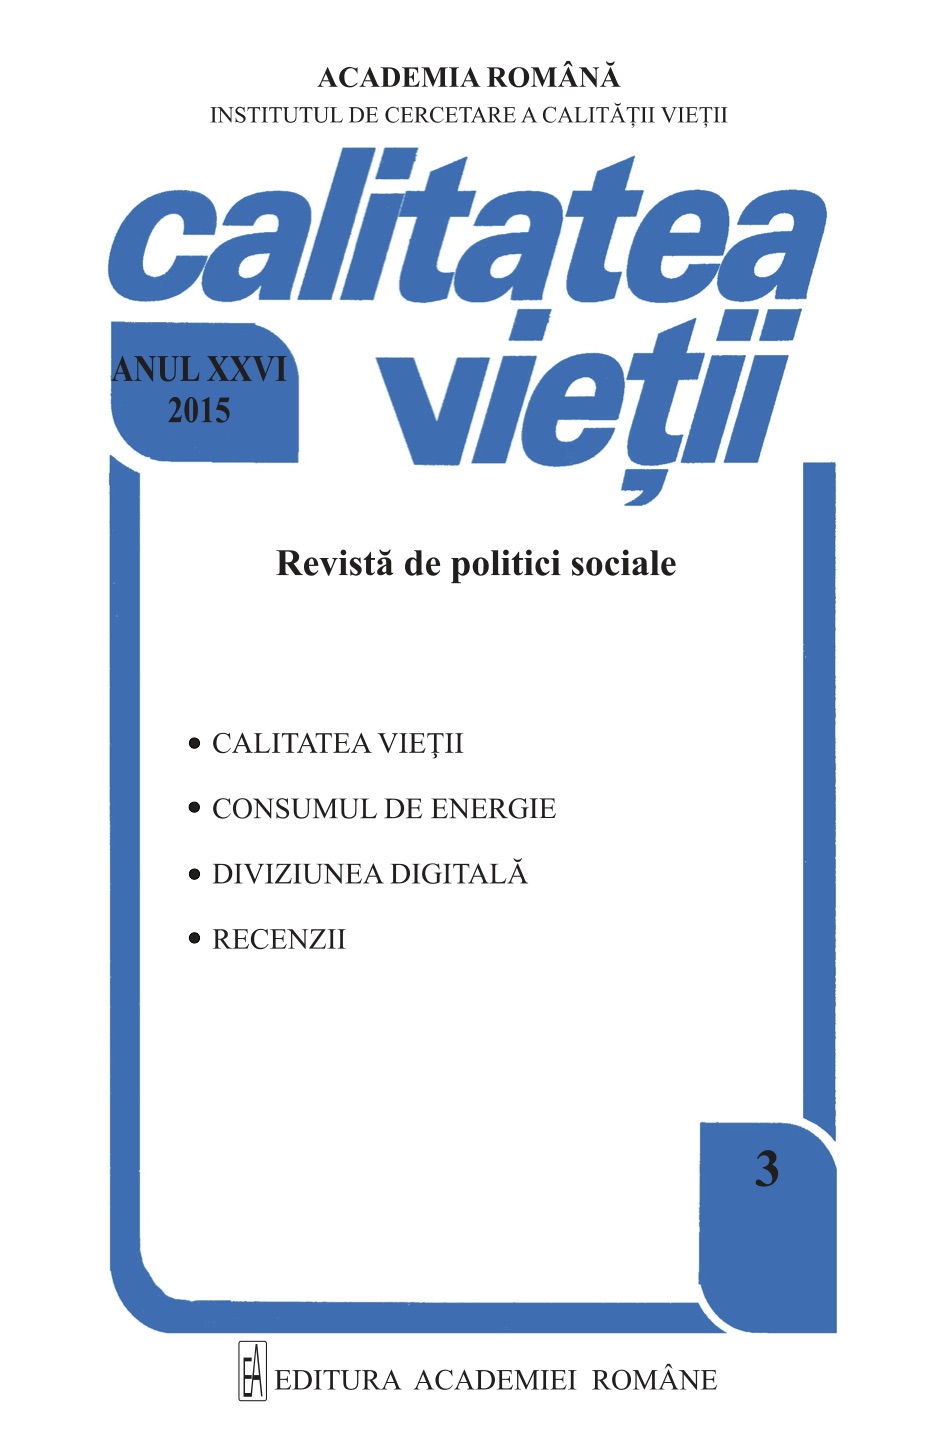 Marian VASILE, Introducere în SPSS pentru cercetarea socială şi de piaţă: o perspectivă aplicată, Editura Polirom, Iaşi, 2014, 205 p.